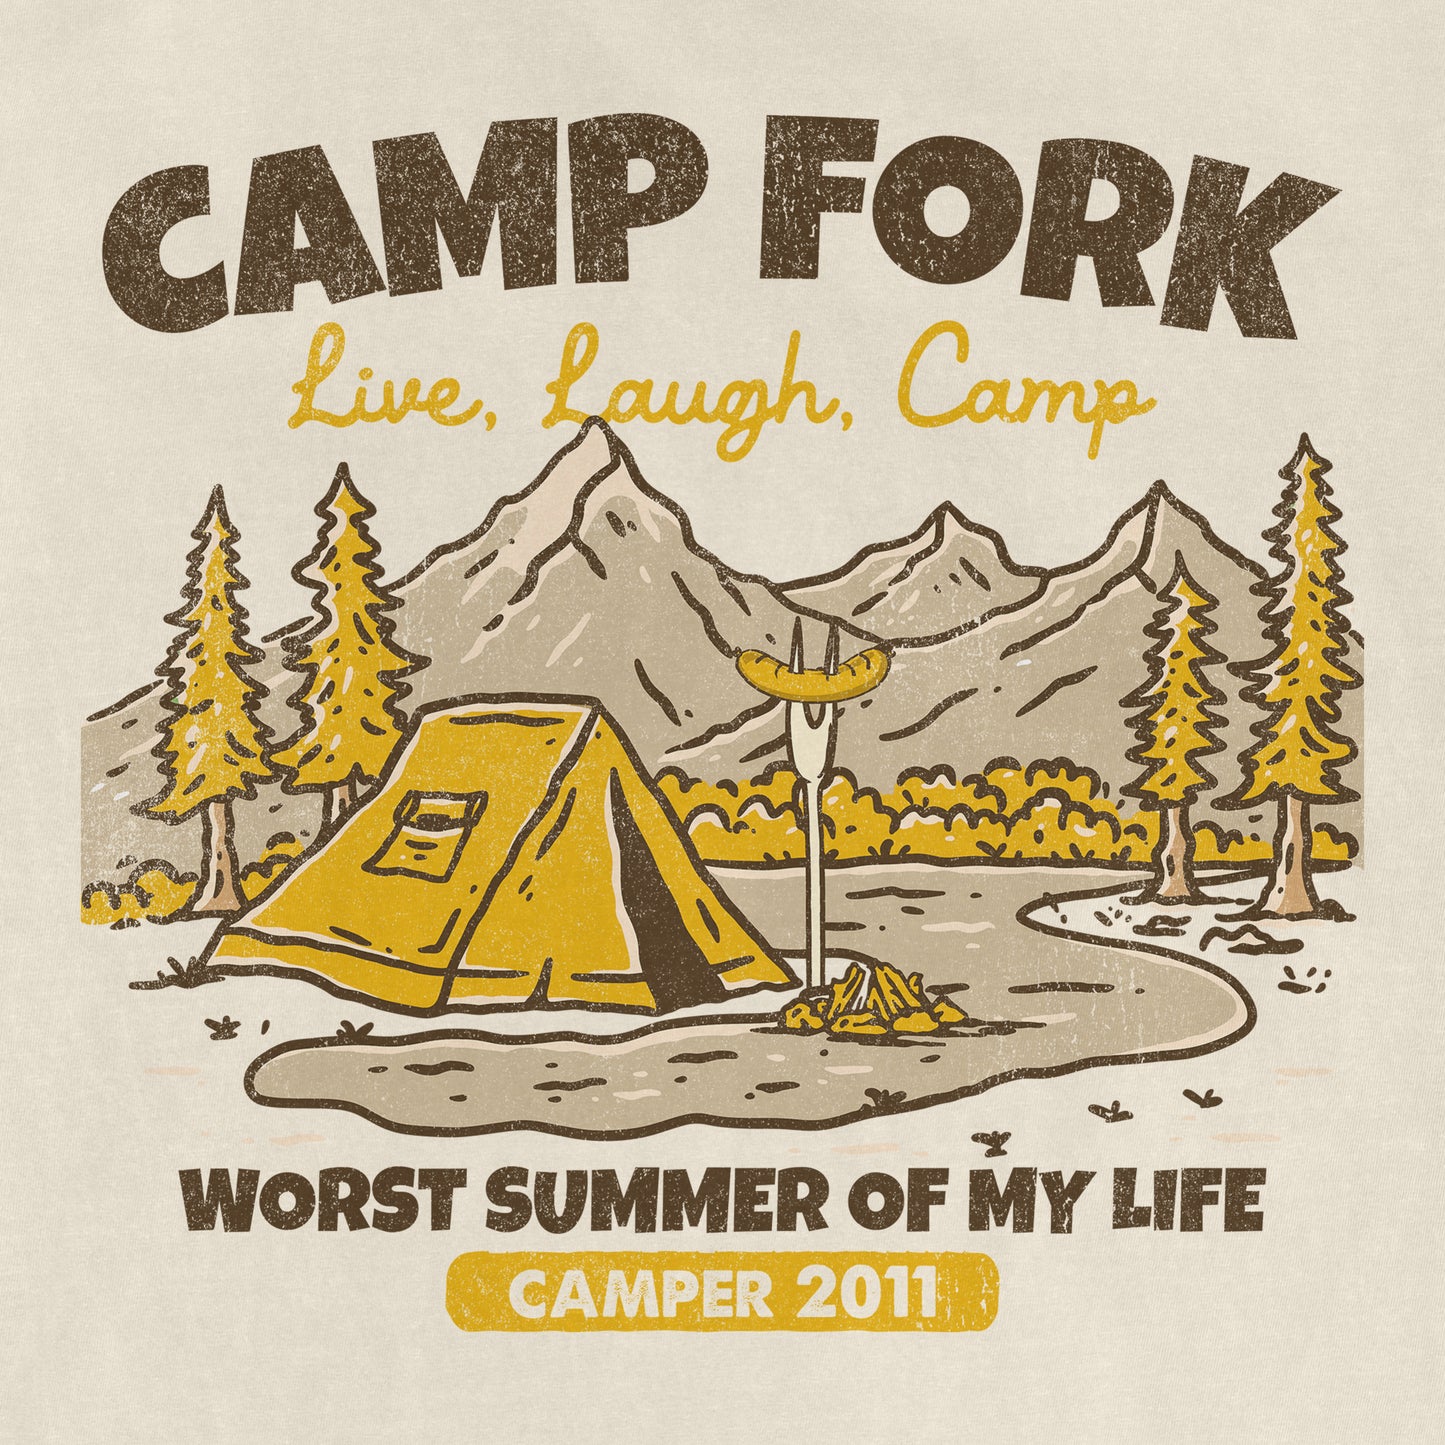 Camp Fork Summer Camp | Comfort Colors® Vintage Tee